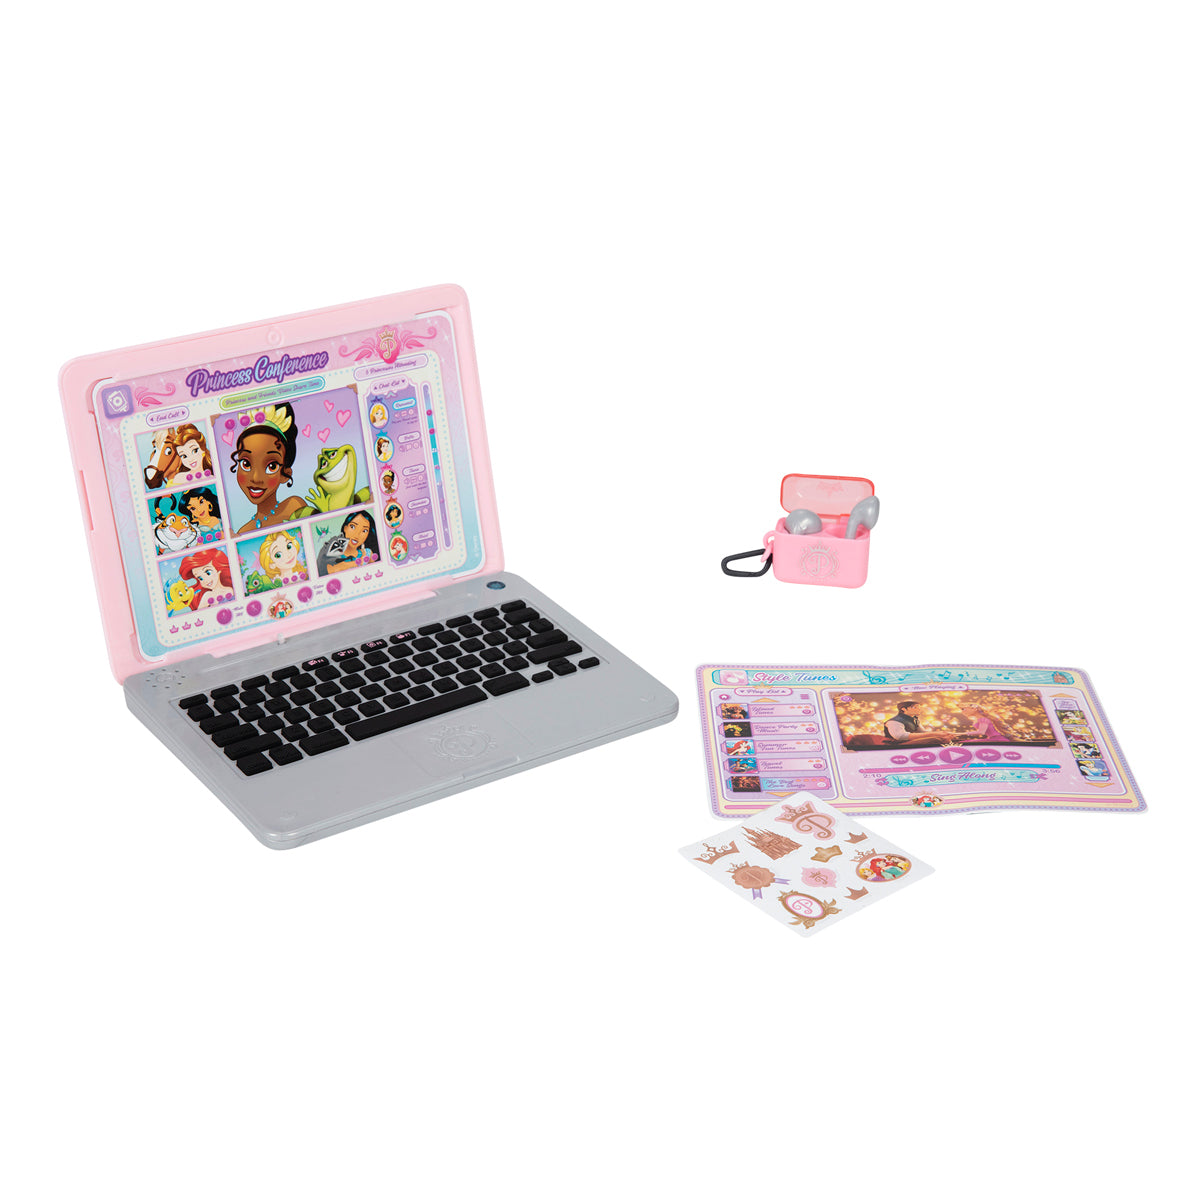 Disney Princess Play Click and Swap Laptop Playset